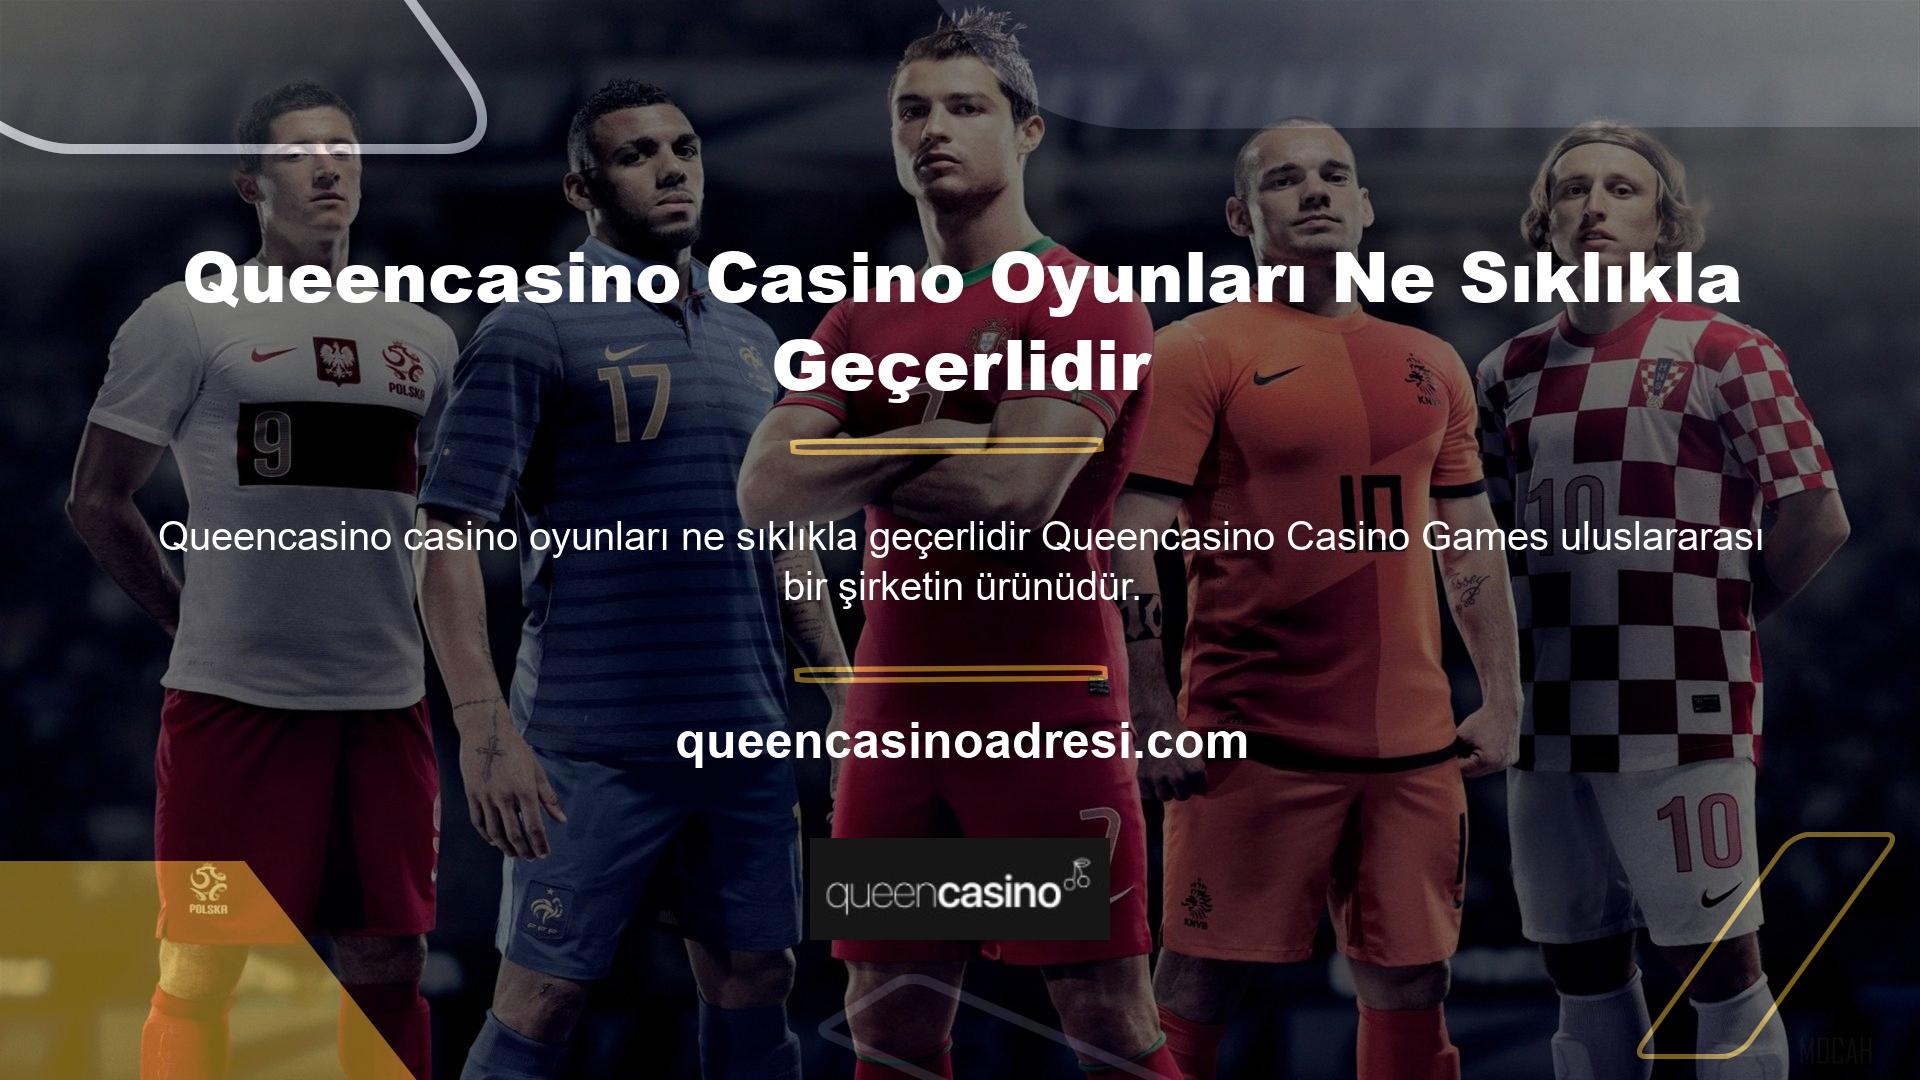 Queencasino Slots, her zaman olduğu gibi, geniş oyun yelpazesi ve premium içerikle kullanıcılara benzersiz bir casino deneyimi sunarak casino oyun adreslerini yeniden canlandırıyor ve küresel oyun endüstrisine yeni bir soluk getiriyor